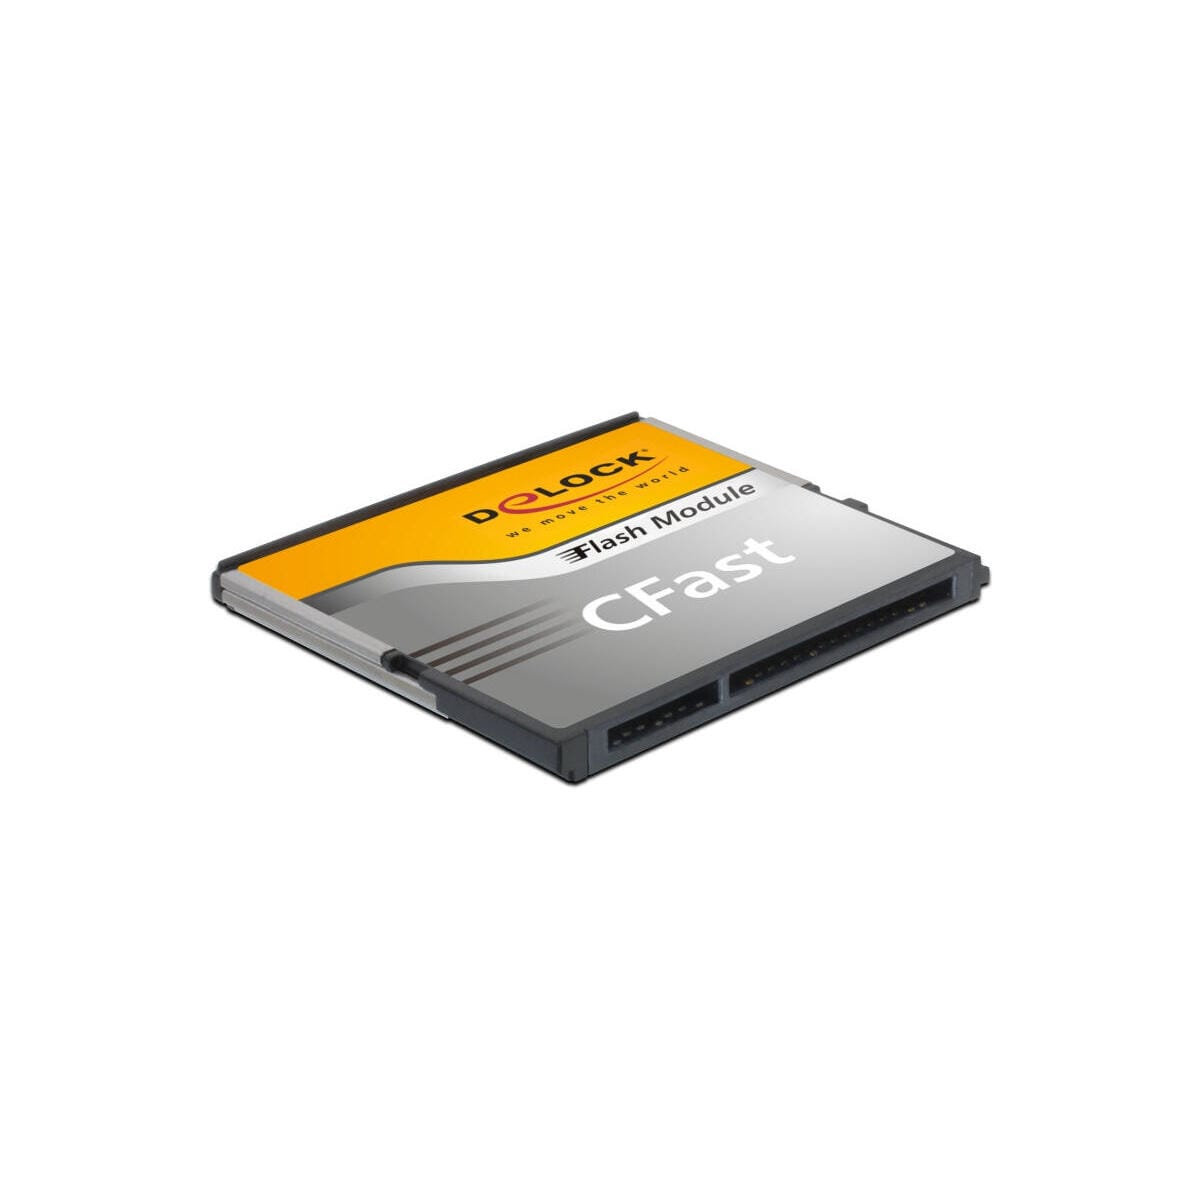 8 54699, MB/s 100 Flash DELOCK Compact GB, Speicherkarte,